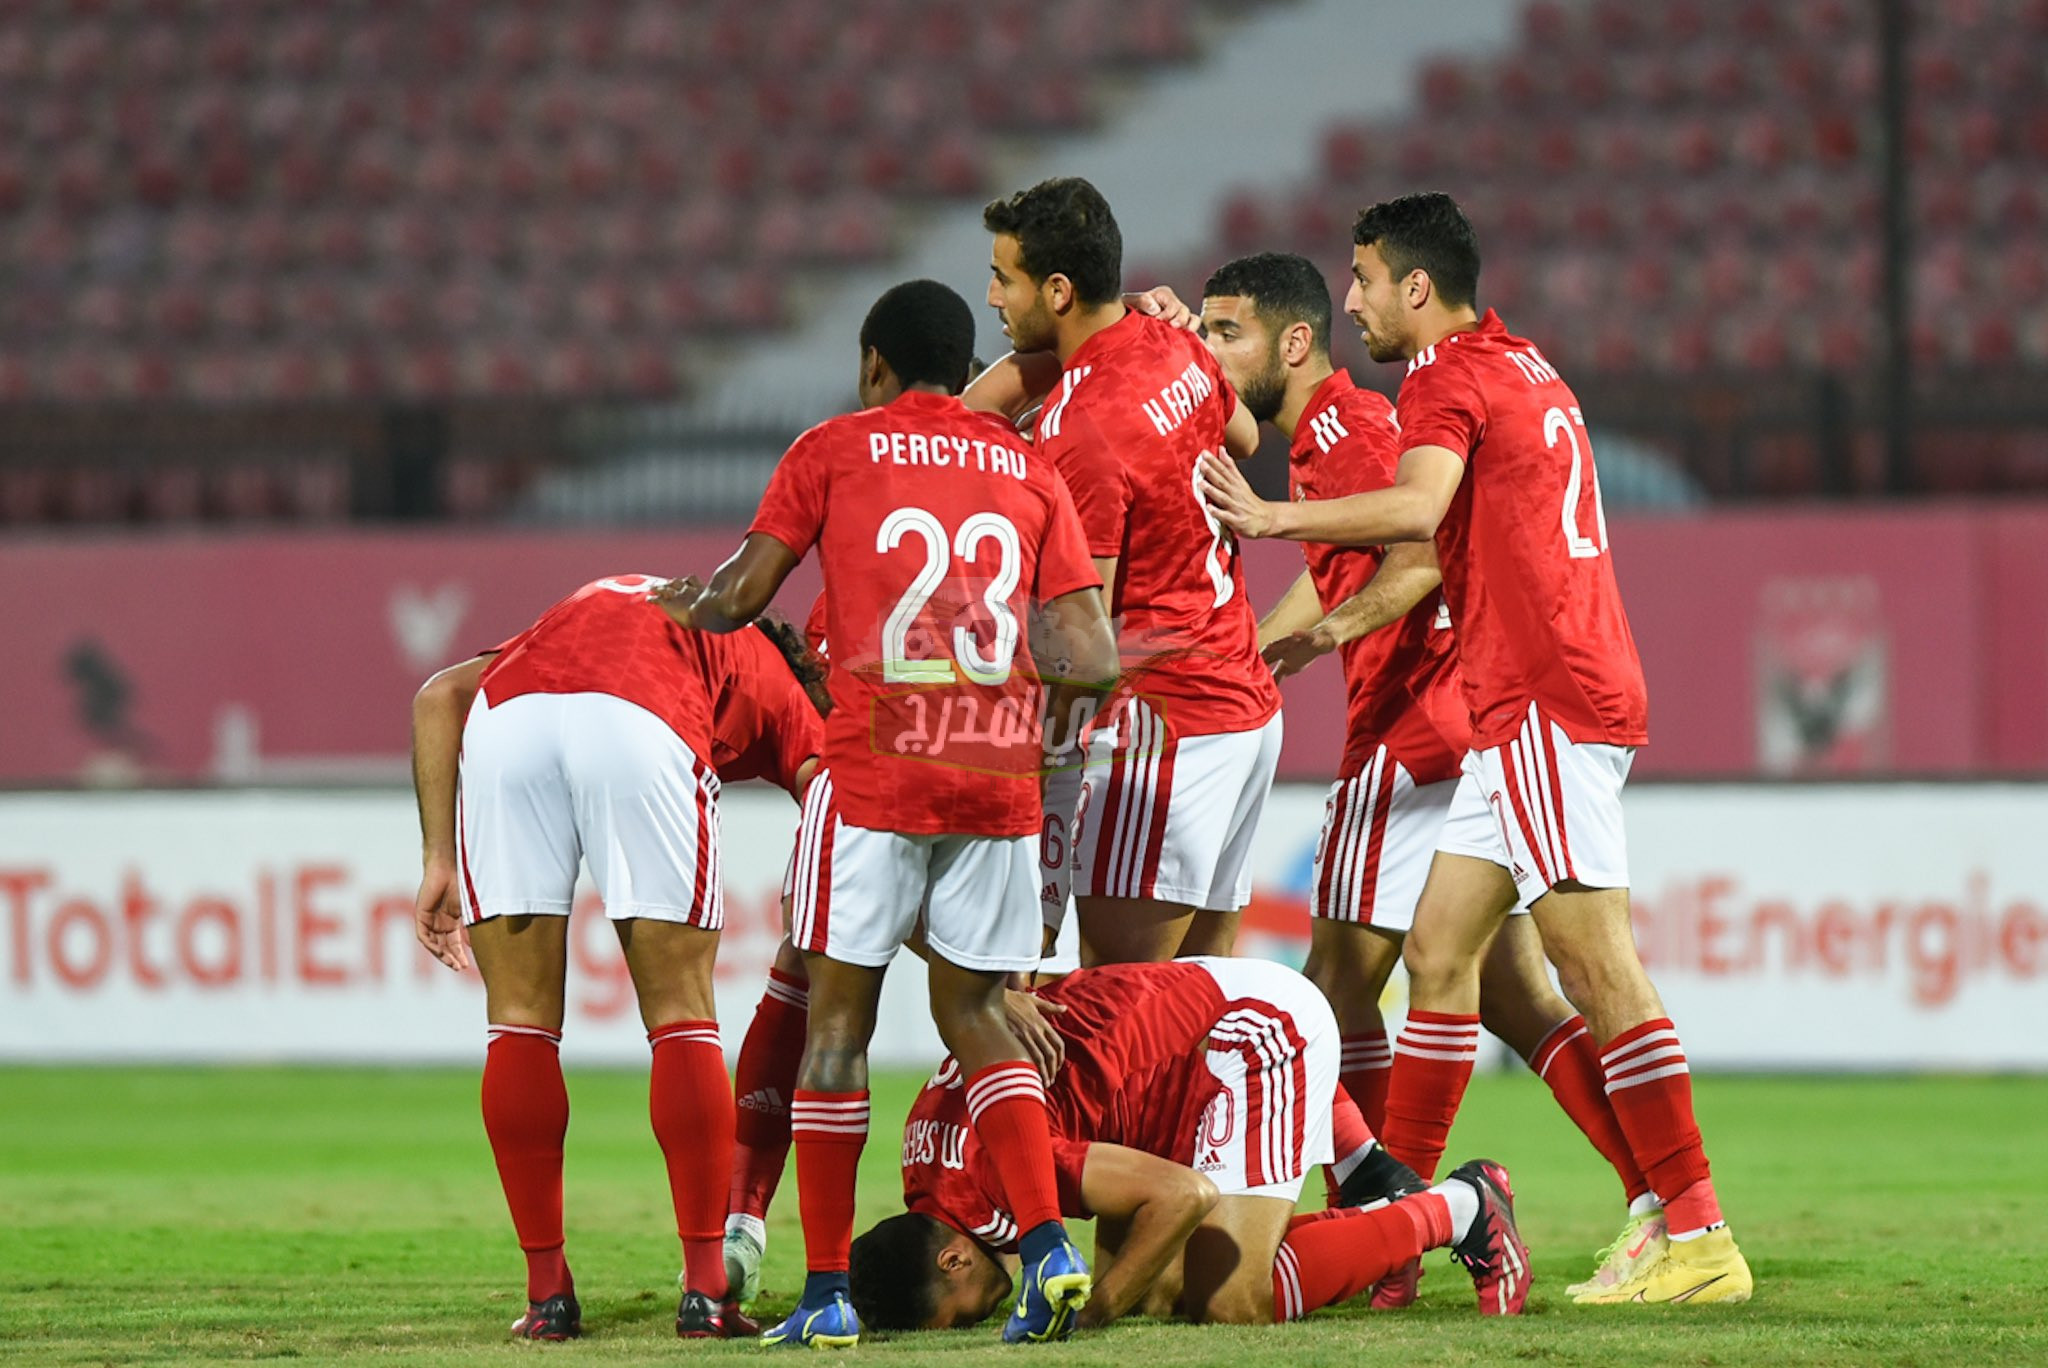 تشكيل الزمالك المتوقع ضد شباب بلوزداد Zamalek vs Belouizdad في دوري أبطال إفريقيا والقنوات المفتوحة الناقلة لها